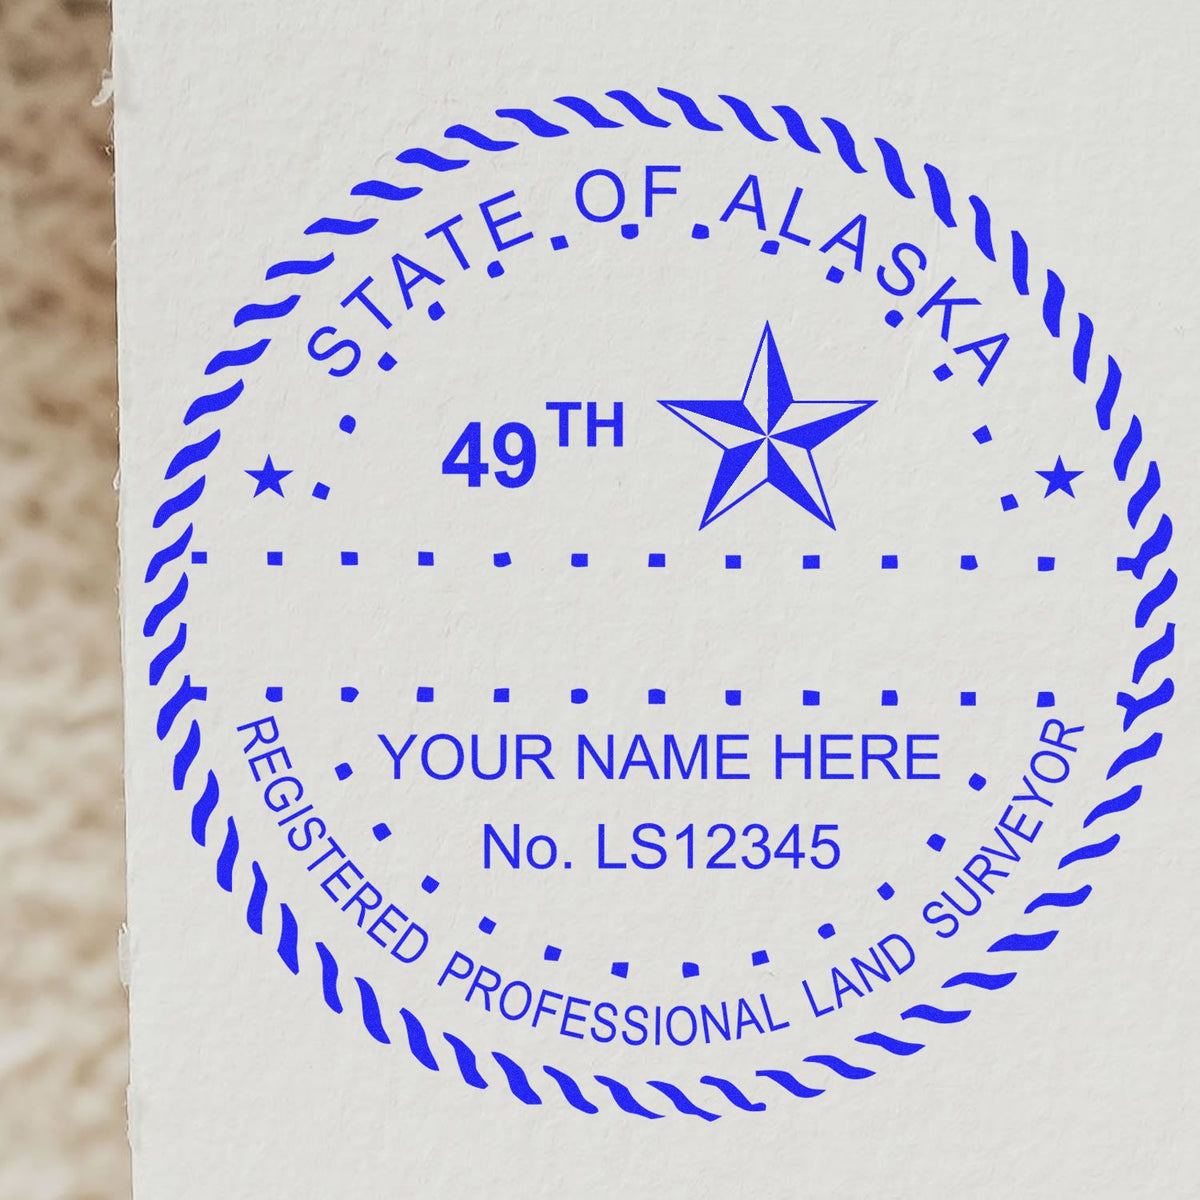 Alaska Land Surveyor Seal Stamp In Use Photo